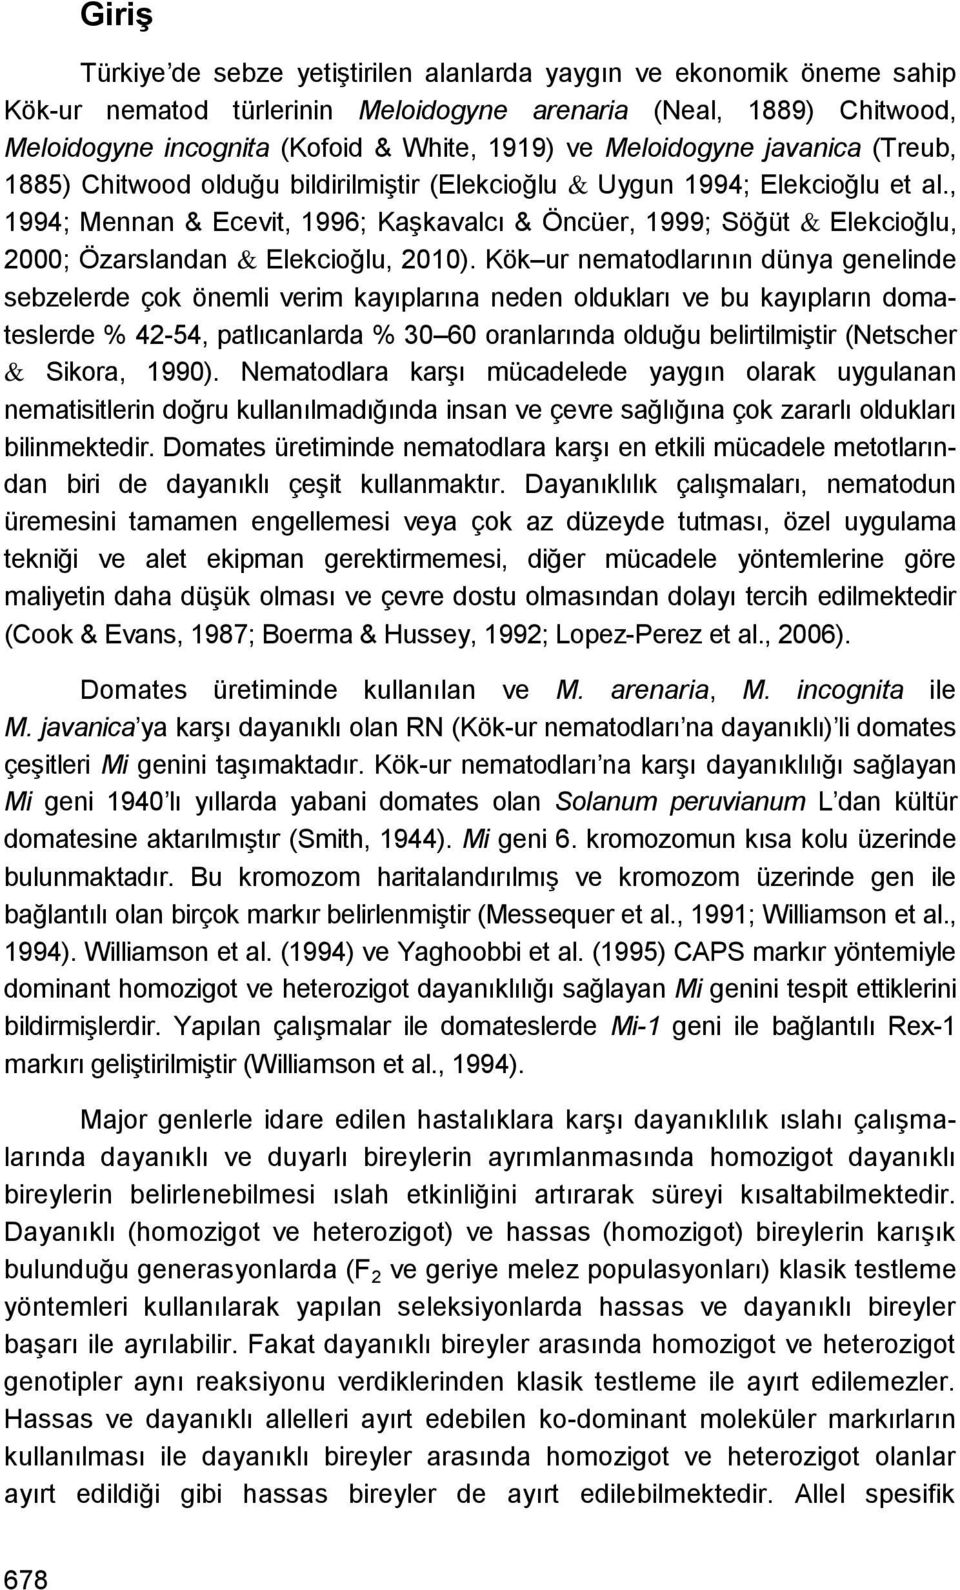 , 1994; Mennan & Ecevit, 1996; KaĢkavalcı & Öncüer, 1999; Söğüt & Elekcioğlu, 2000; Özarslandan & Elekcioğlu, 2010).